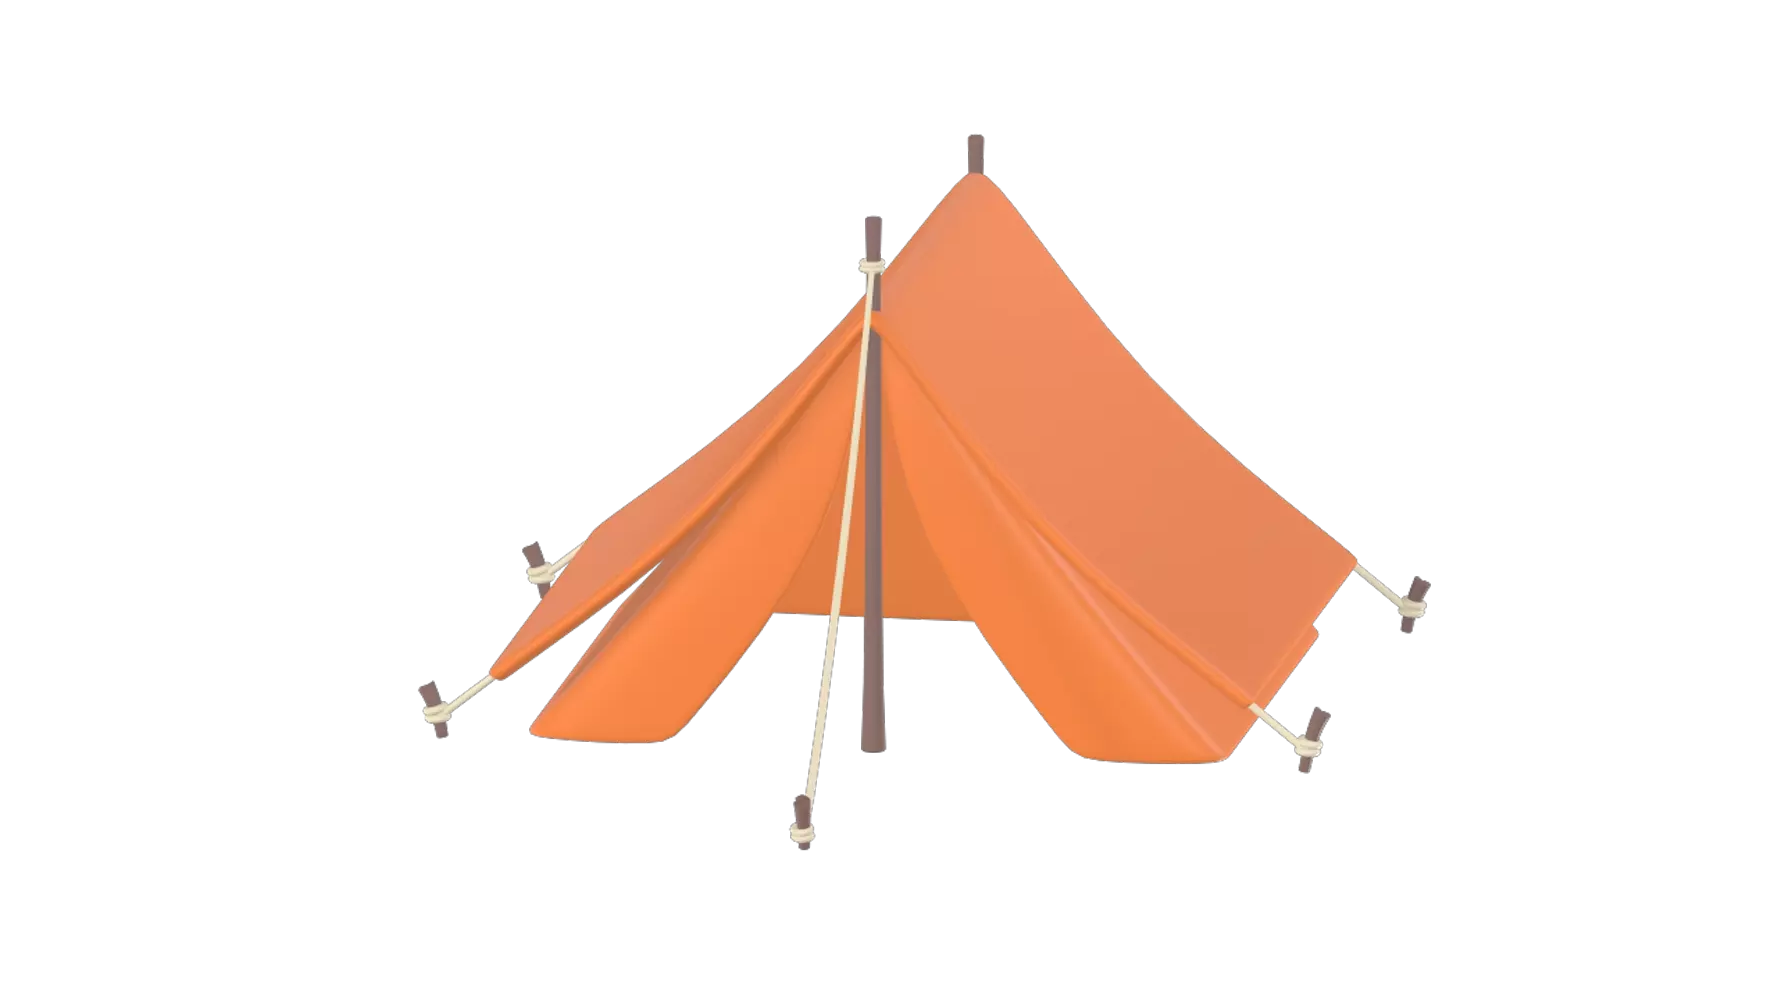 Camping Tent 3d model--fe639ef8-025f-4348-9024-70c03a309781